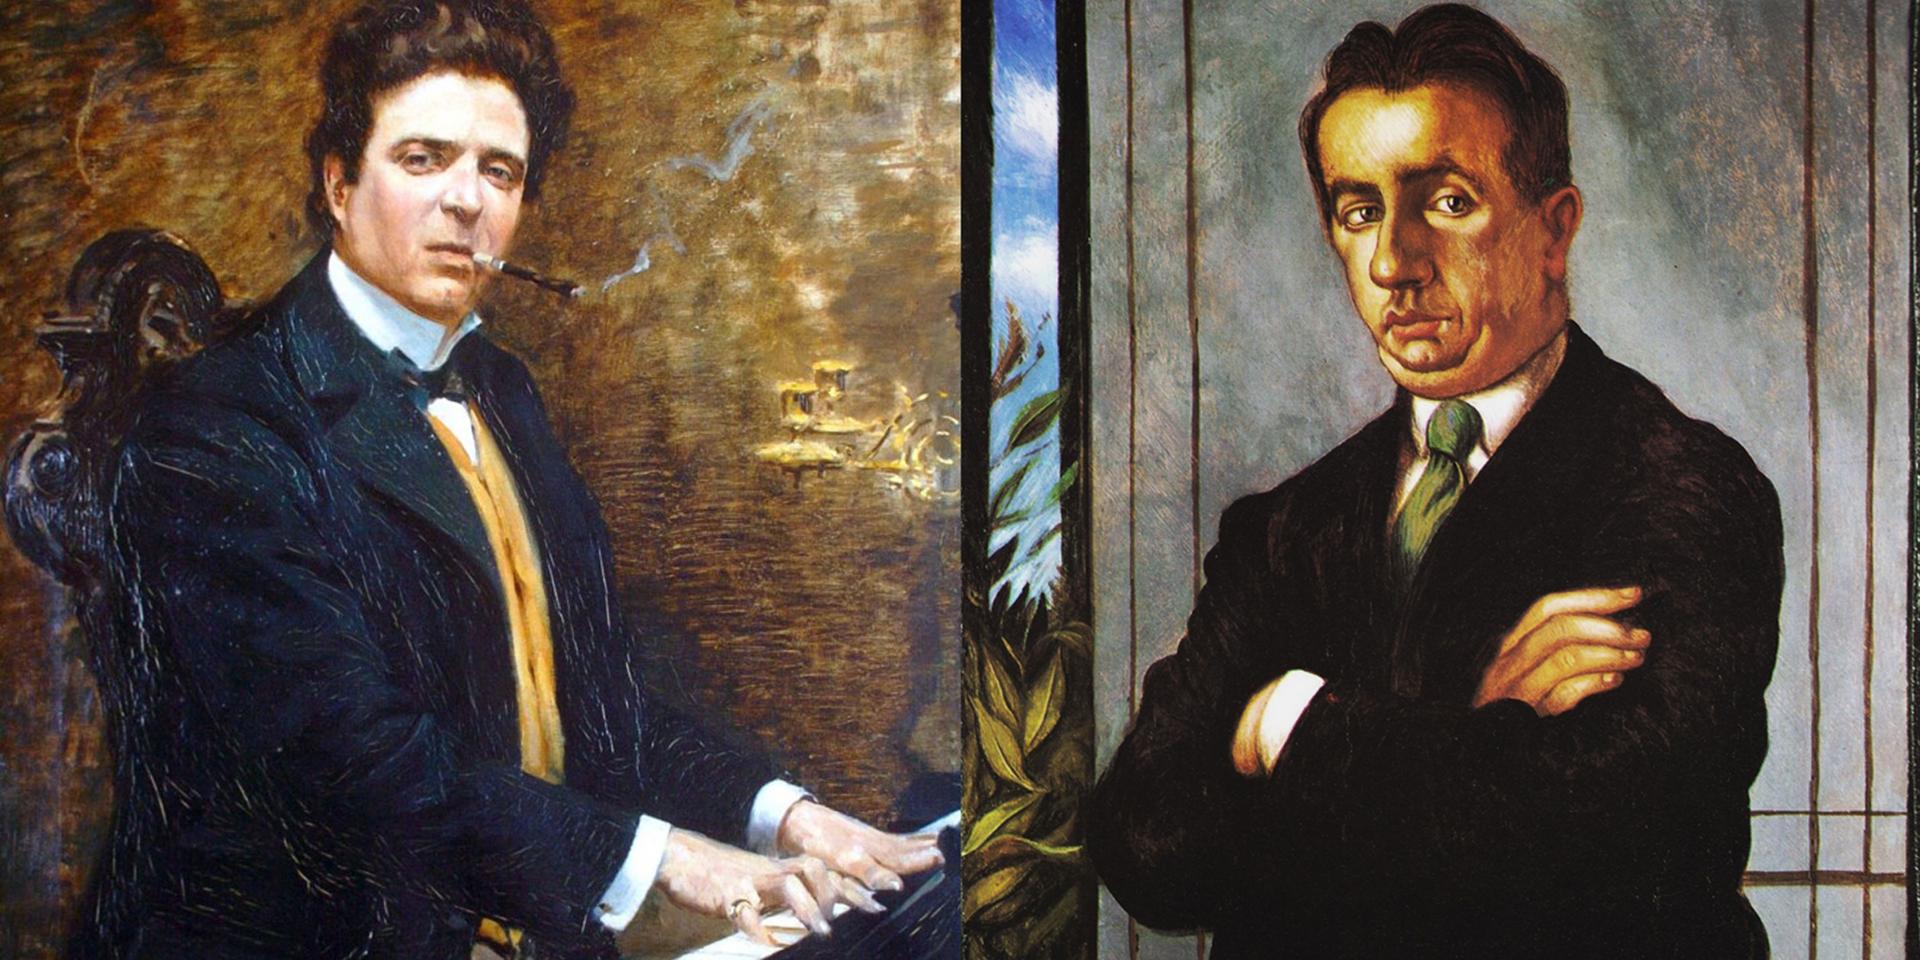 Angiolo Tommasi (1858-1923), Portrait of Pietro Mascagni. Oil on canvas, 1899 and Giorgio De Chirico (1888-1978), Portrait of Alfredo Casella. Egg tempera on canvas, 1924